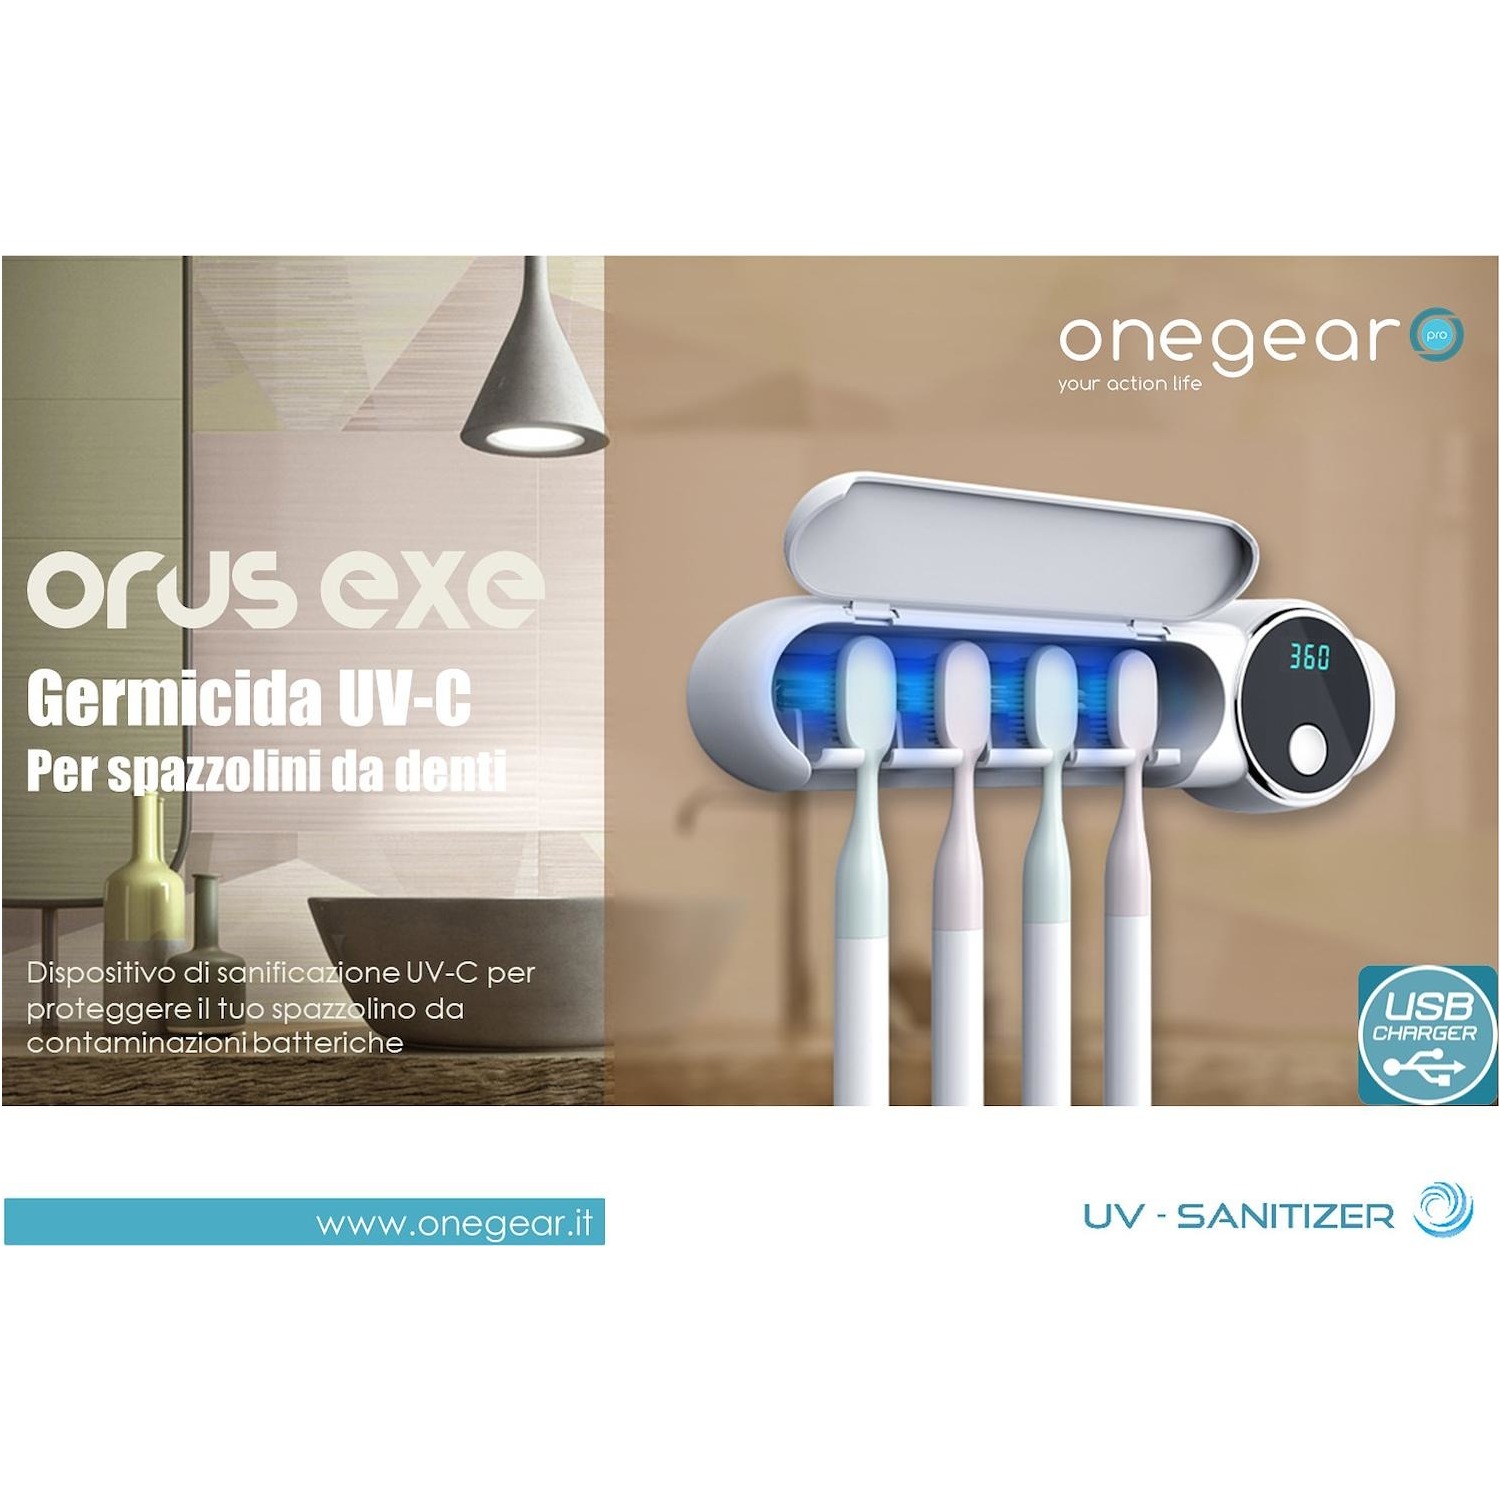 Porta spazzolino + sterilizzatore raggi UV-C Onegear Orus Exe